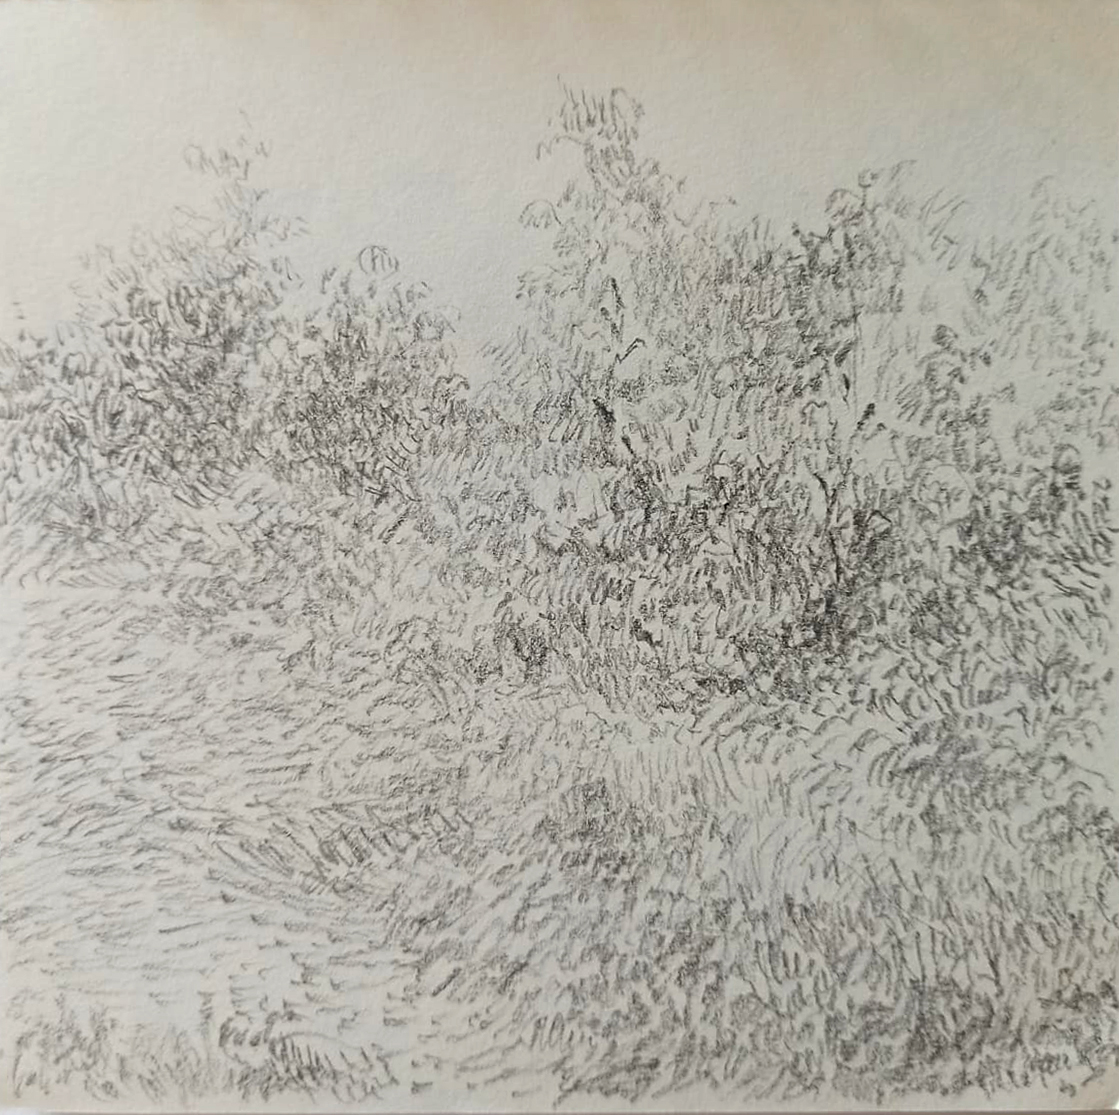 Collective Andrea Nagy Landscape 6 pencil on paper 15 x 15 cm